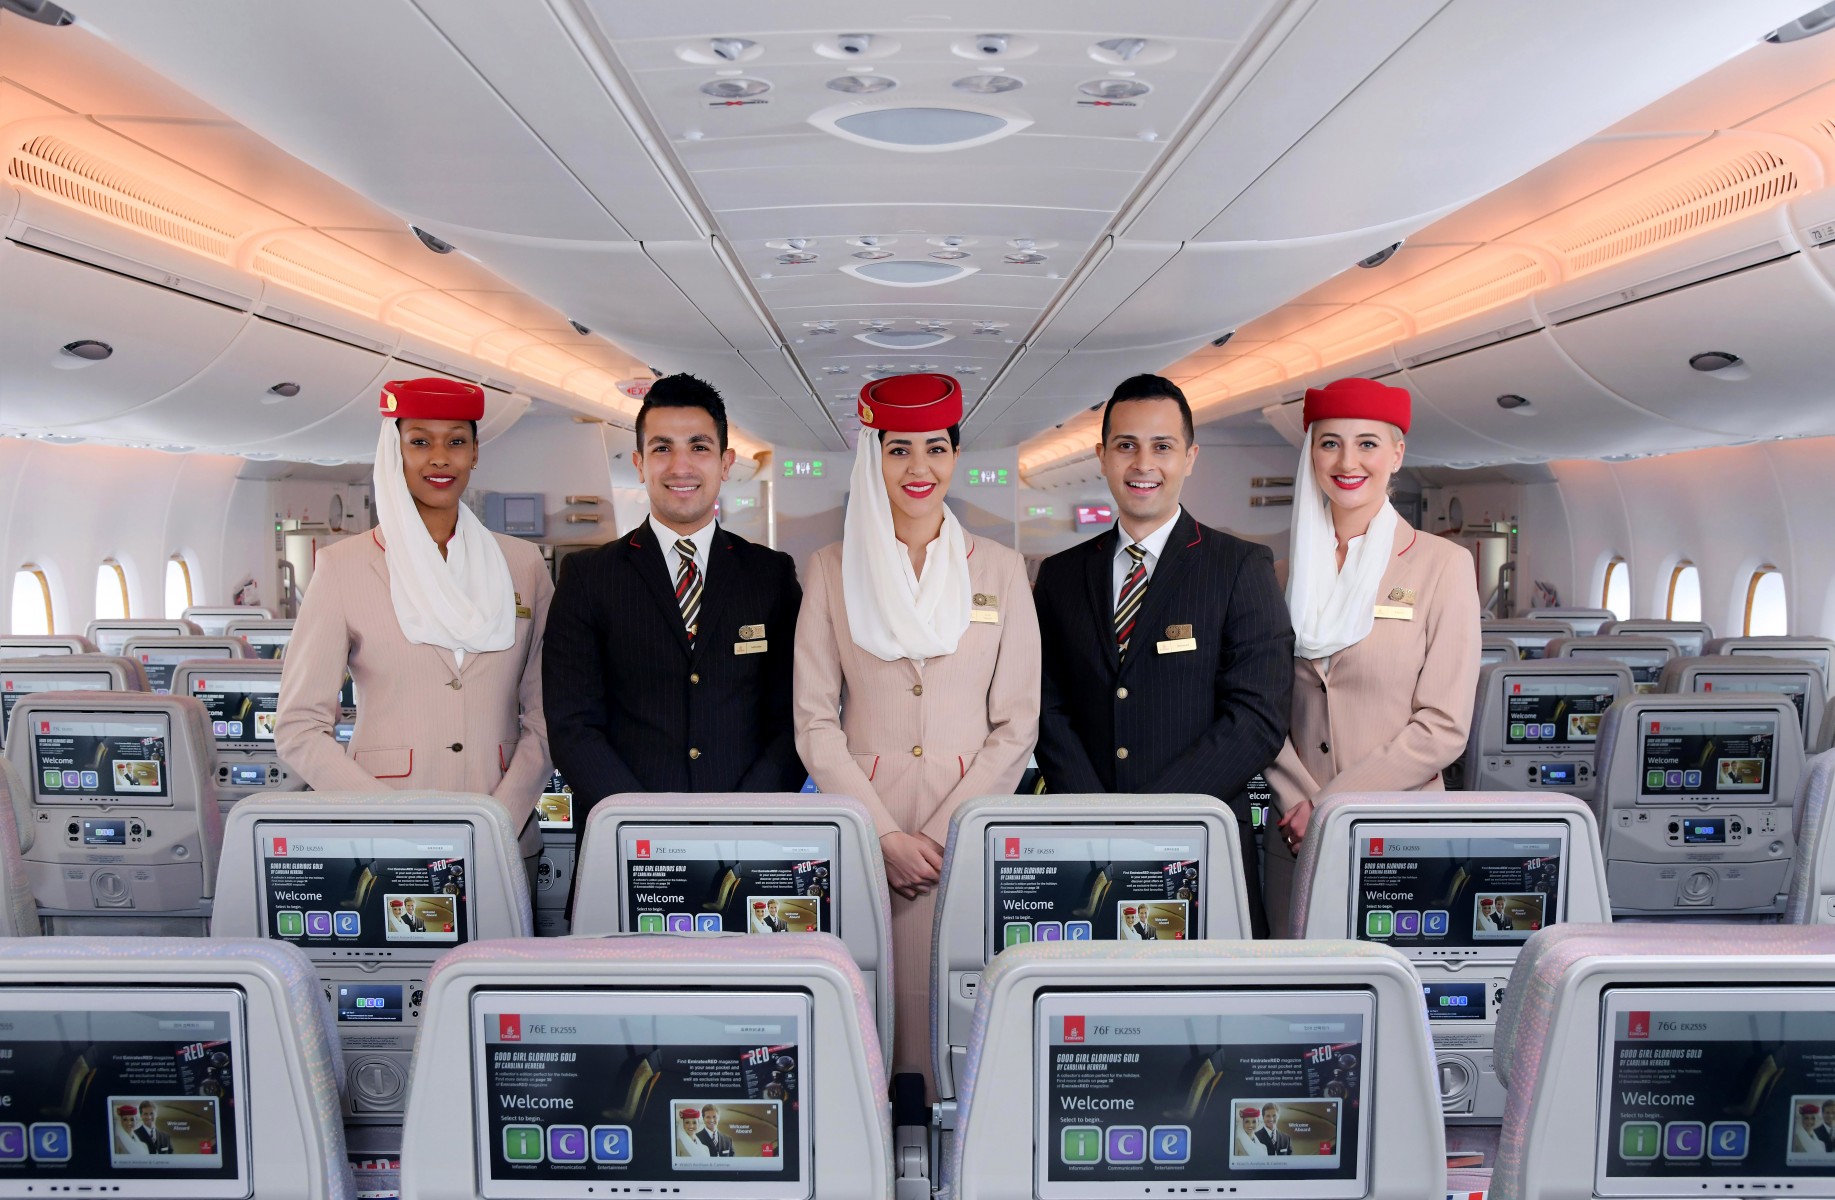 Where do Emirates cabin crew live?